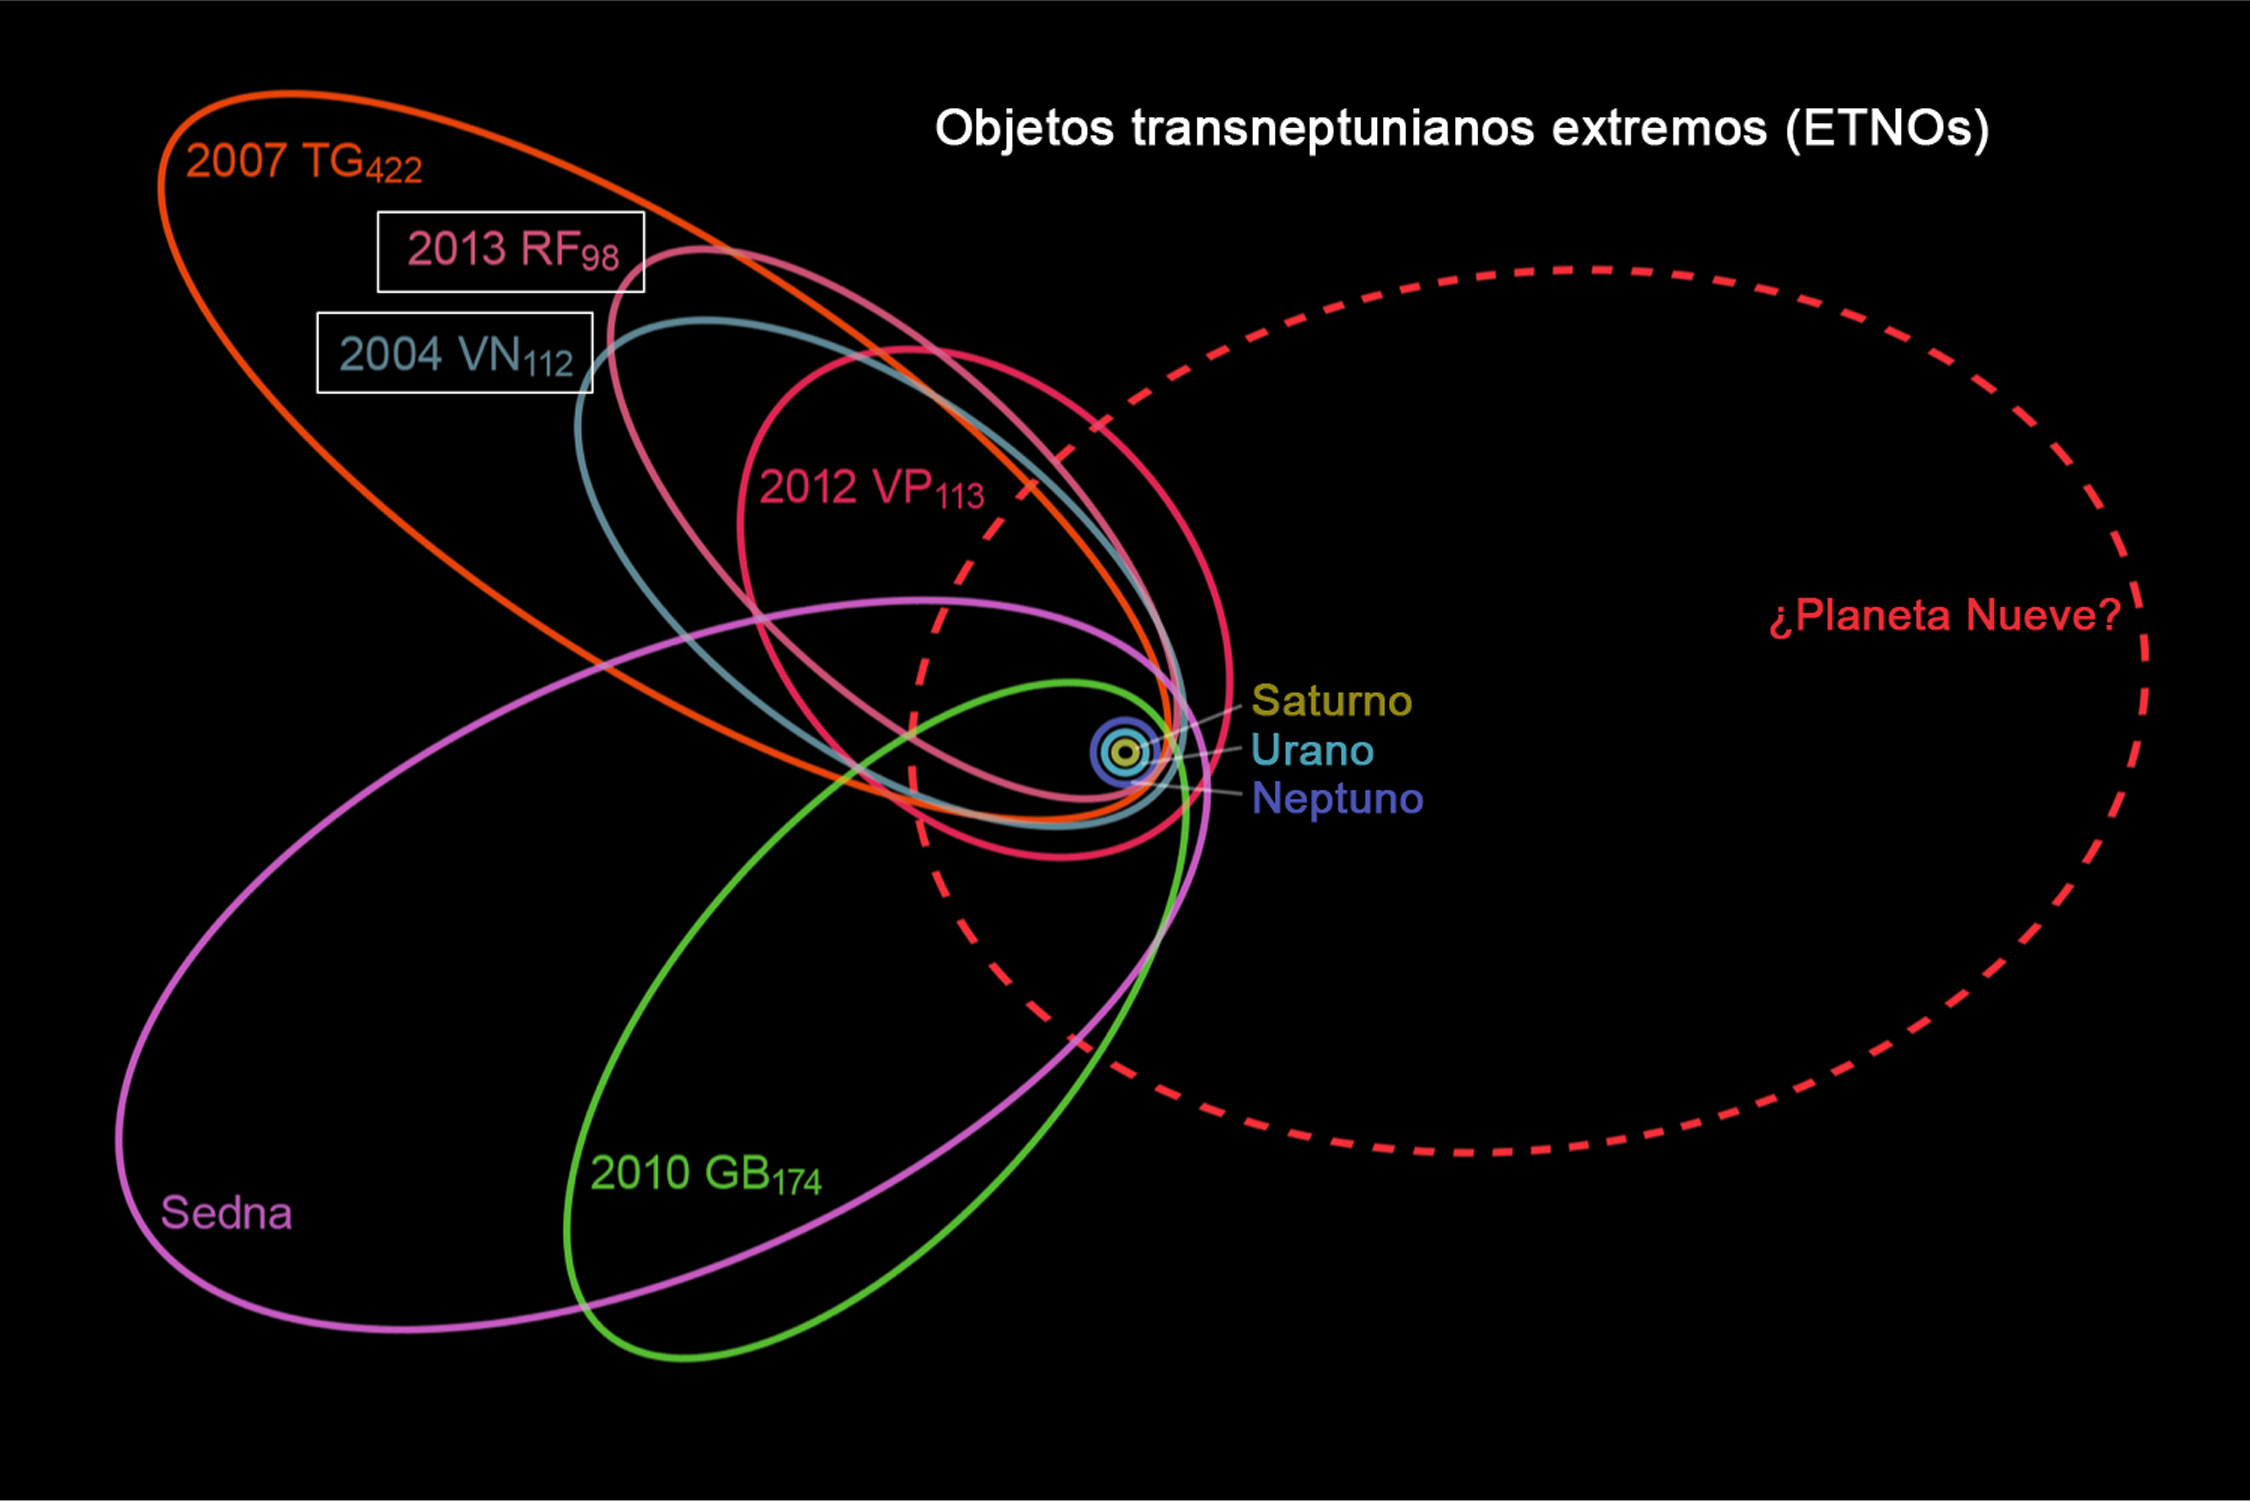 Rappresentazione schematica delle orbite di sei dei sette ETNO, usati per proporre l’ipotesi del “nono pianeta”. La curva tratteggiata rossa mostra la possibile orbita del gigante. Fonte: Wikipedia. 